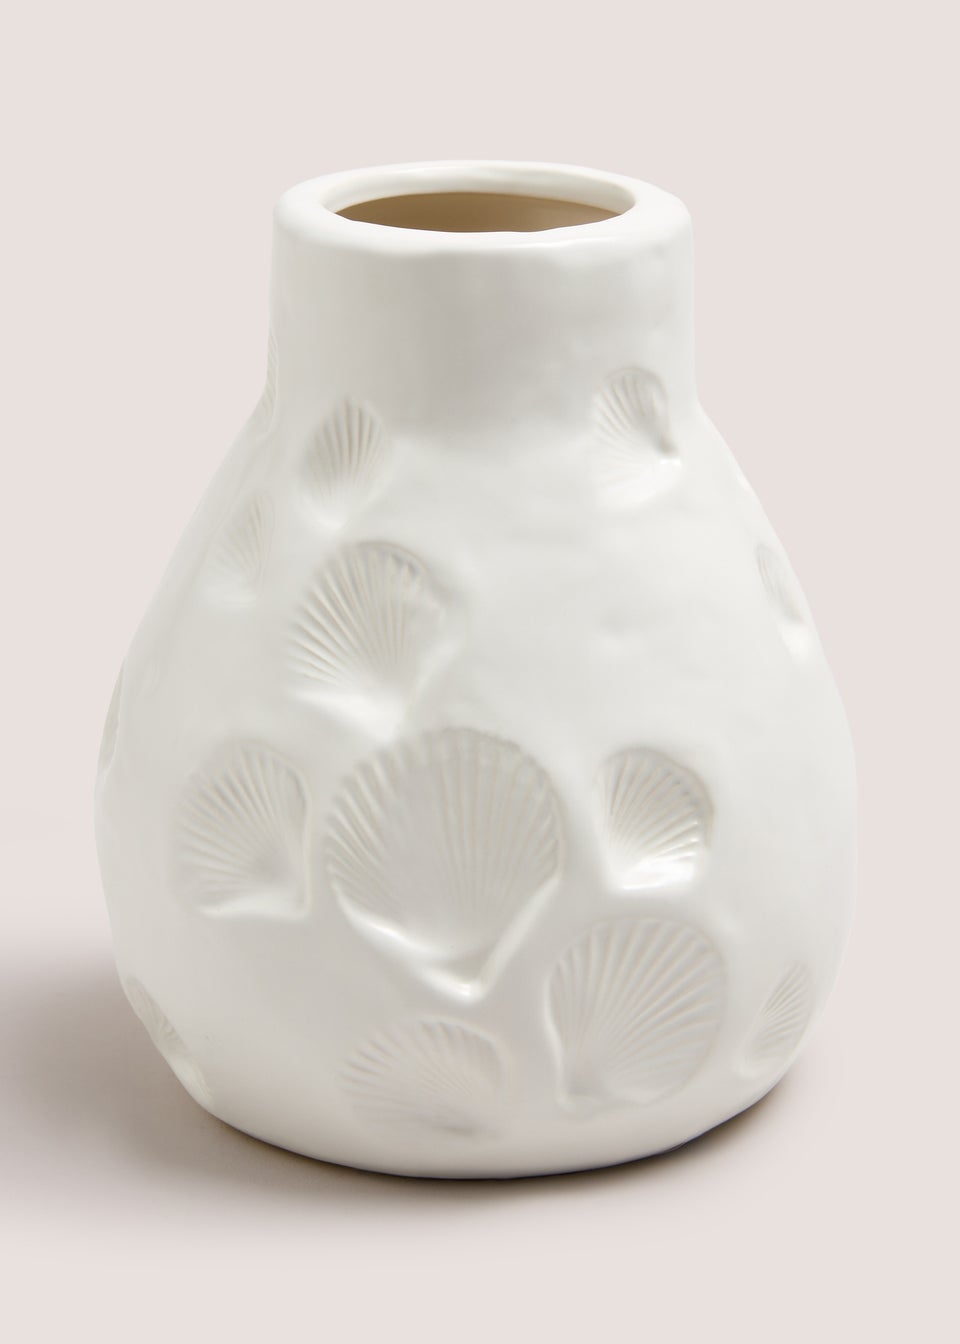 White Shell Embroidered Vase (18cm x 15.5cm x 15.5cm)